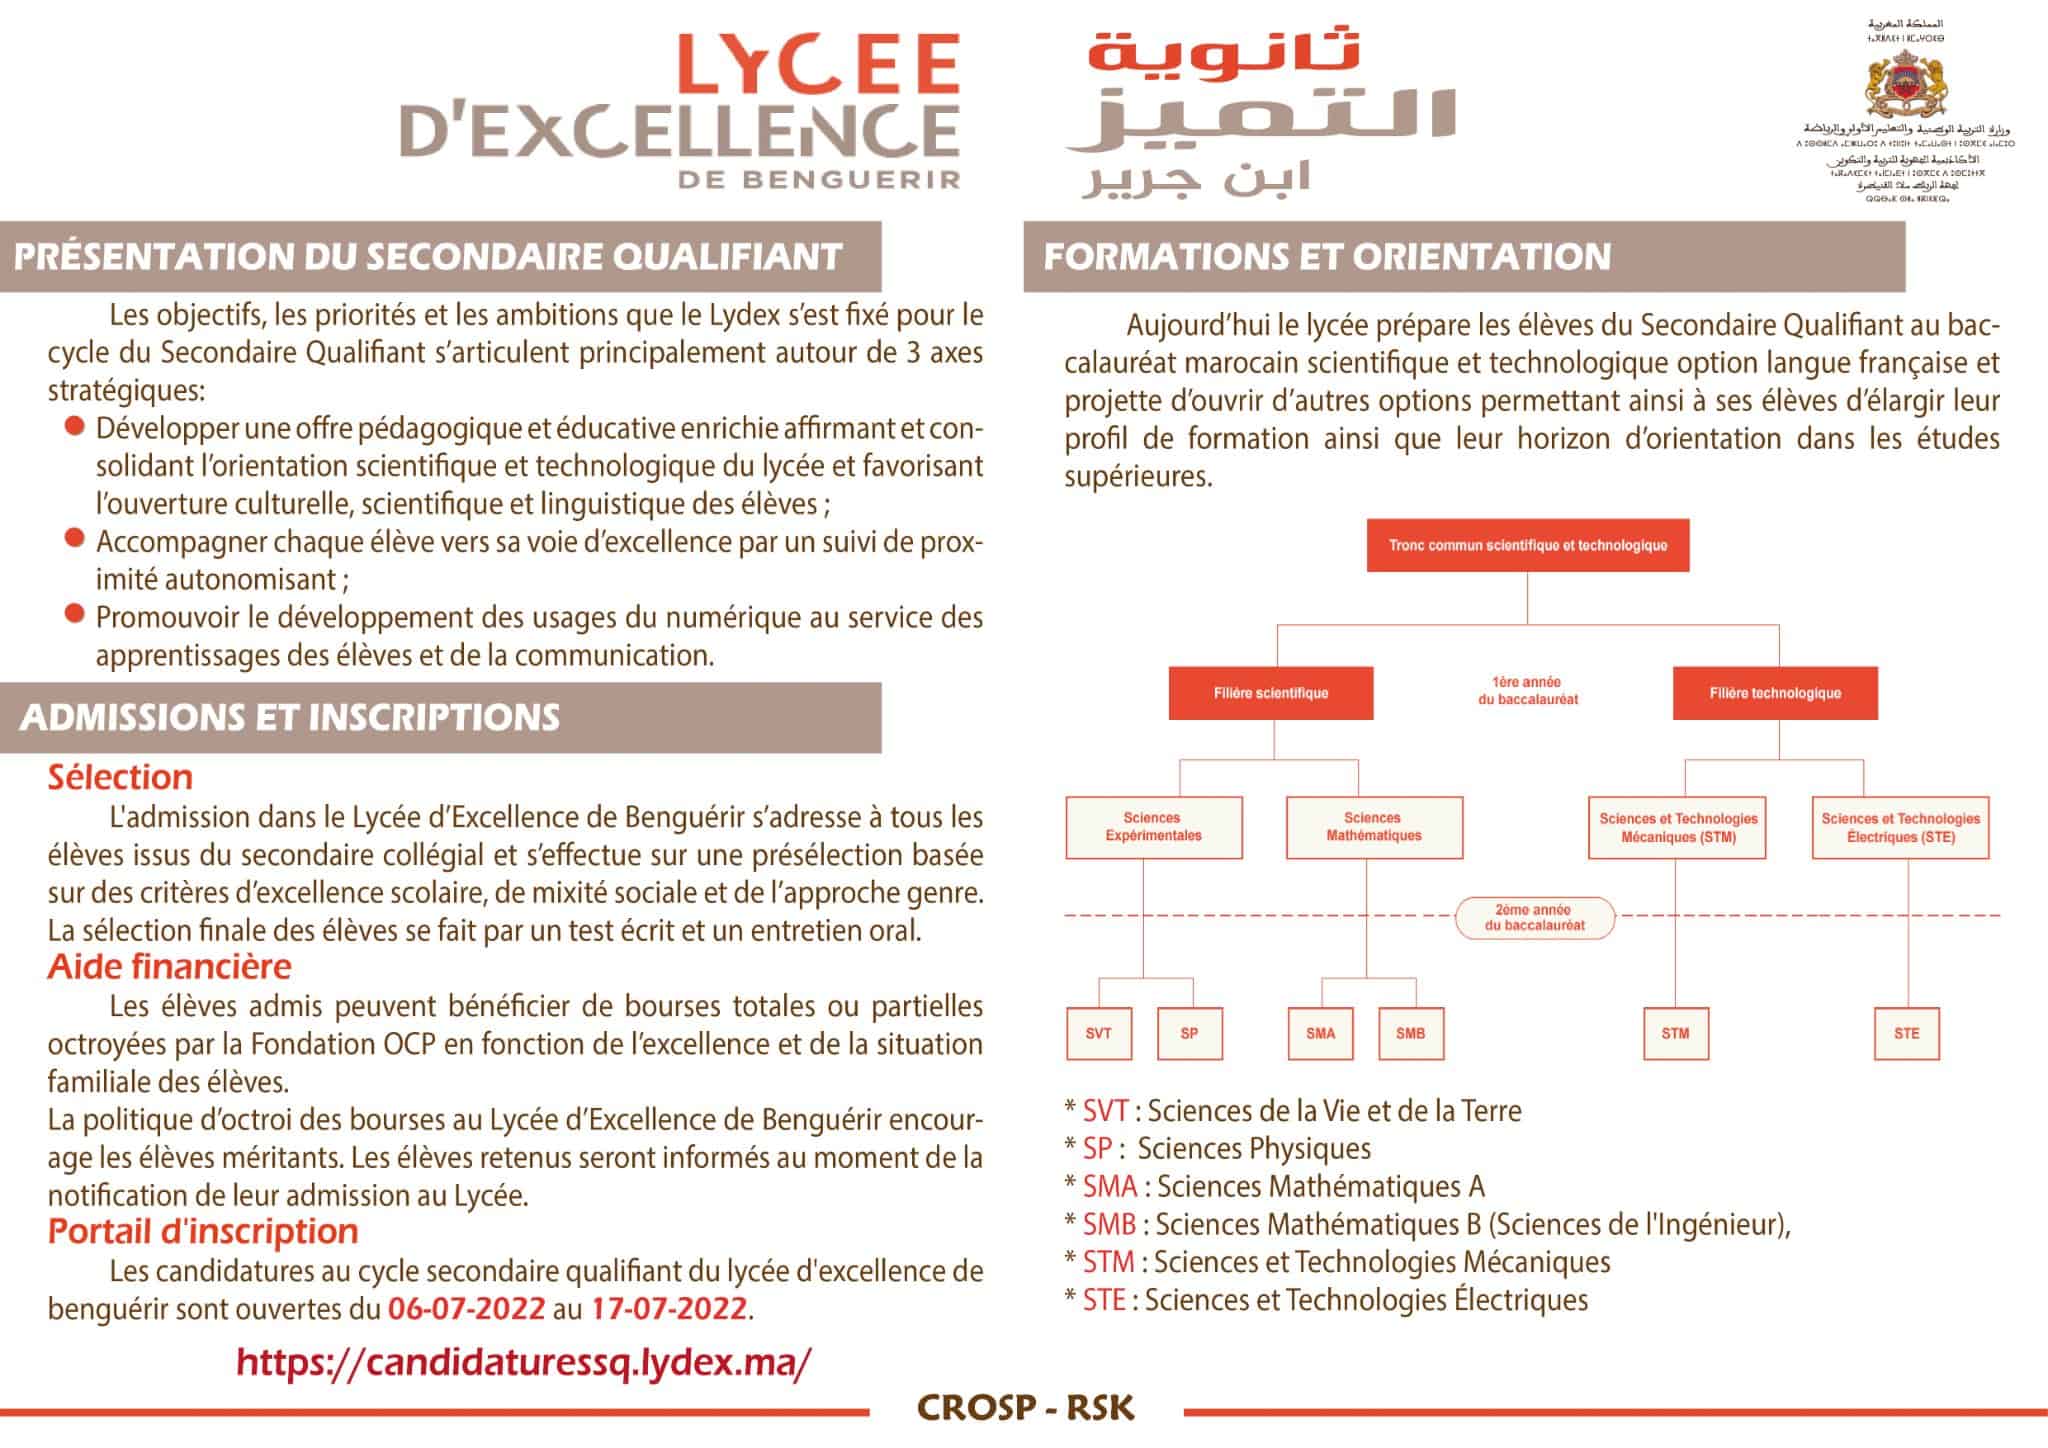 Inscription au Lycée d'Excellence Lydex Benguérir 2022/2023